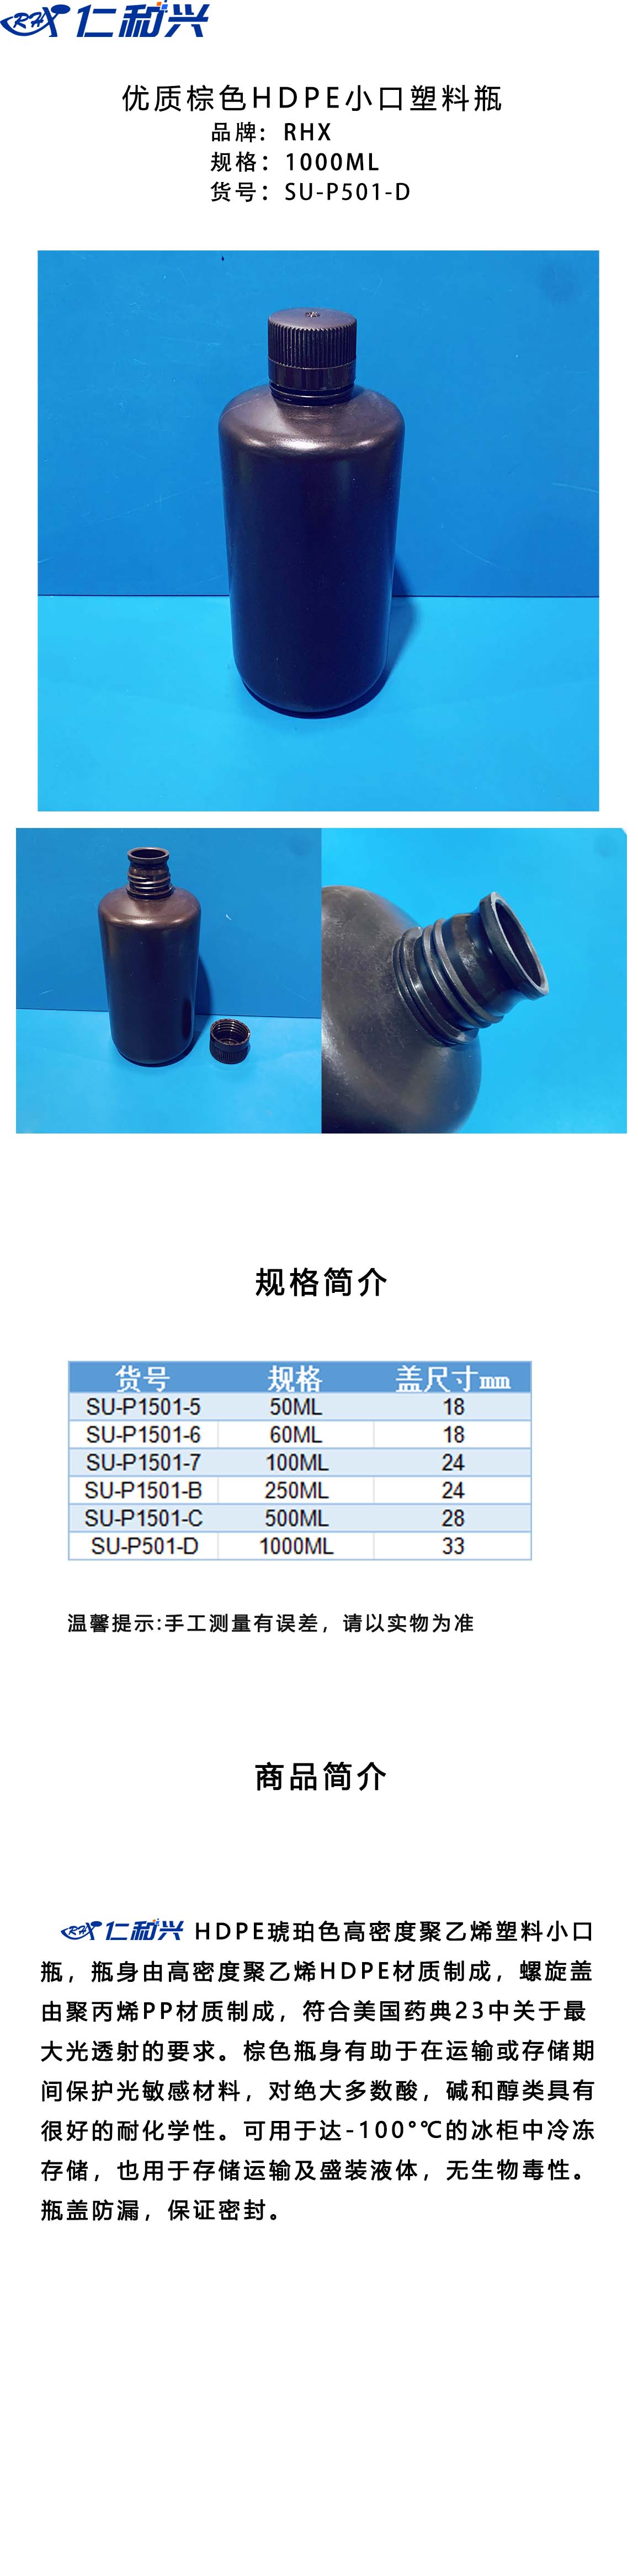 SU-P501-D 棕色HDPE 小口塑料瓶 长图模板.jpg